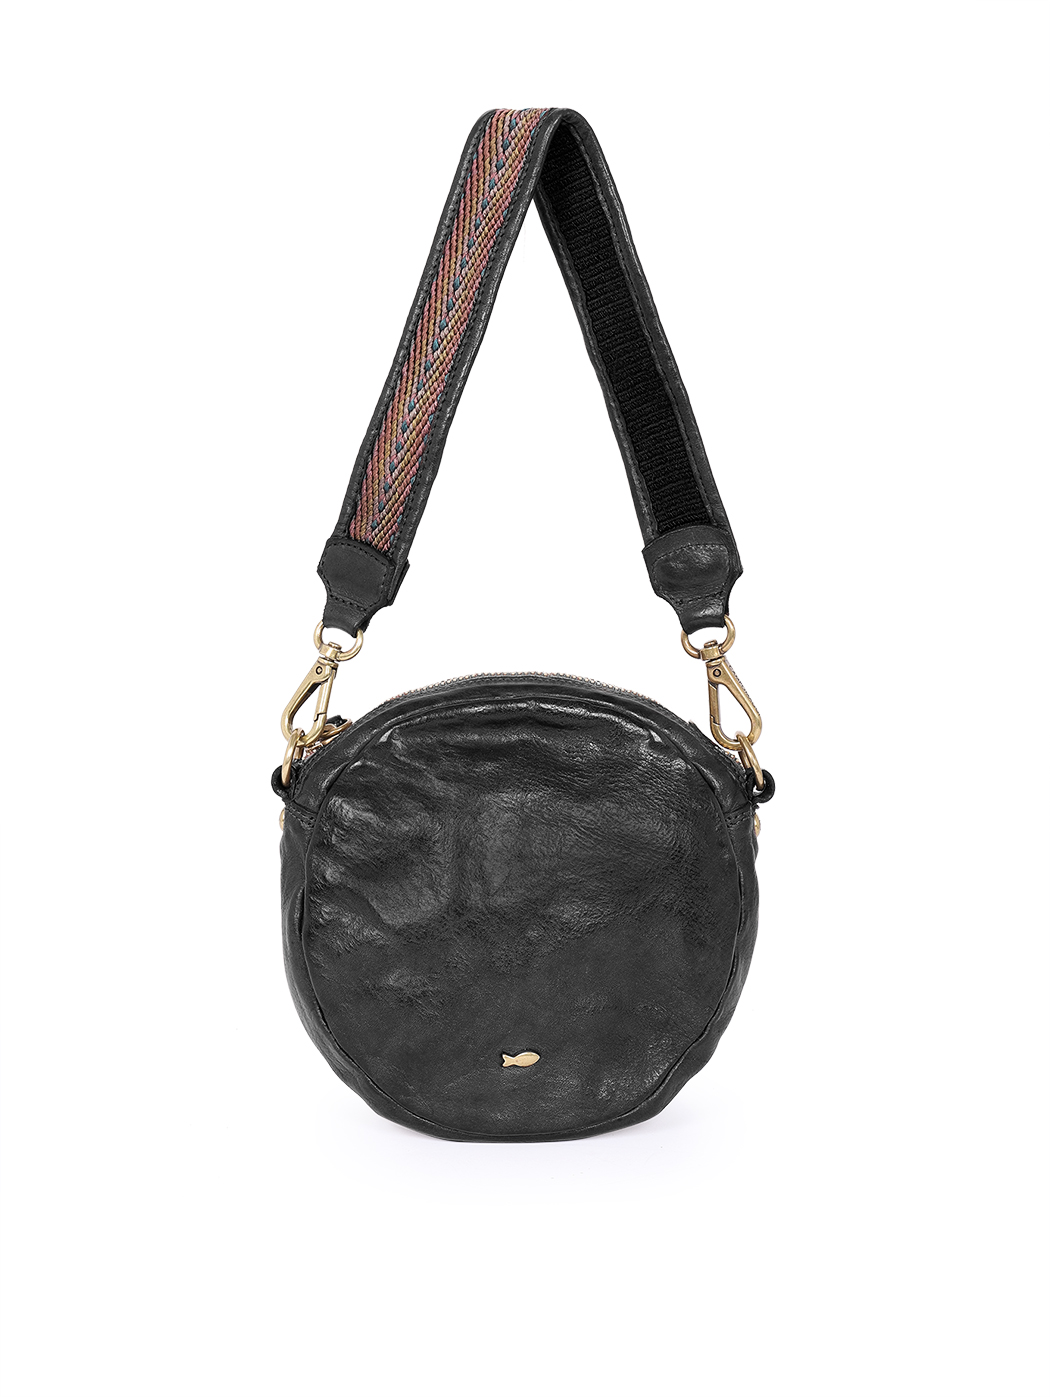 Круглая сумочка кросс – боди с плетеной ручкой черного цвета